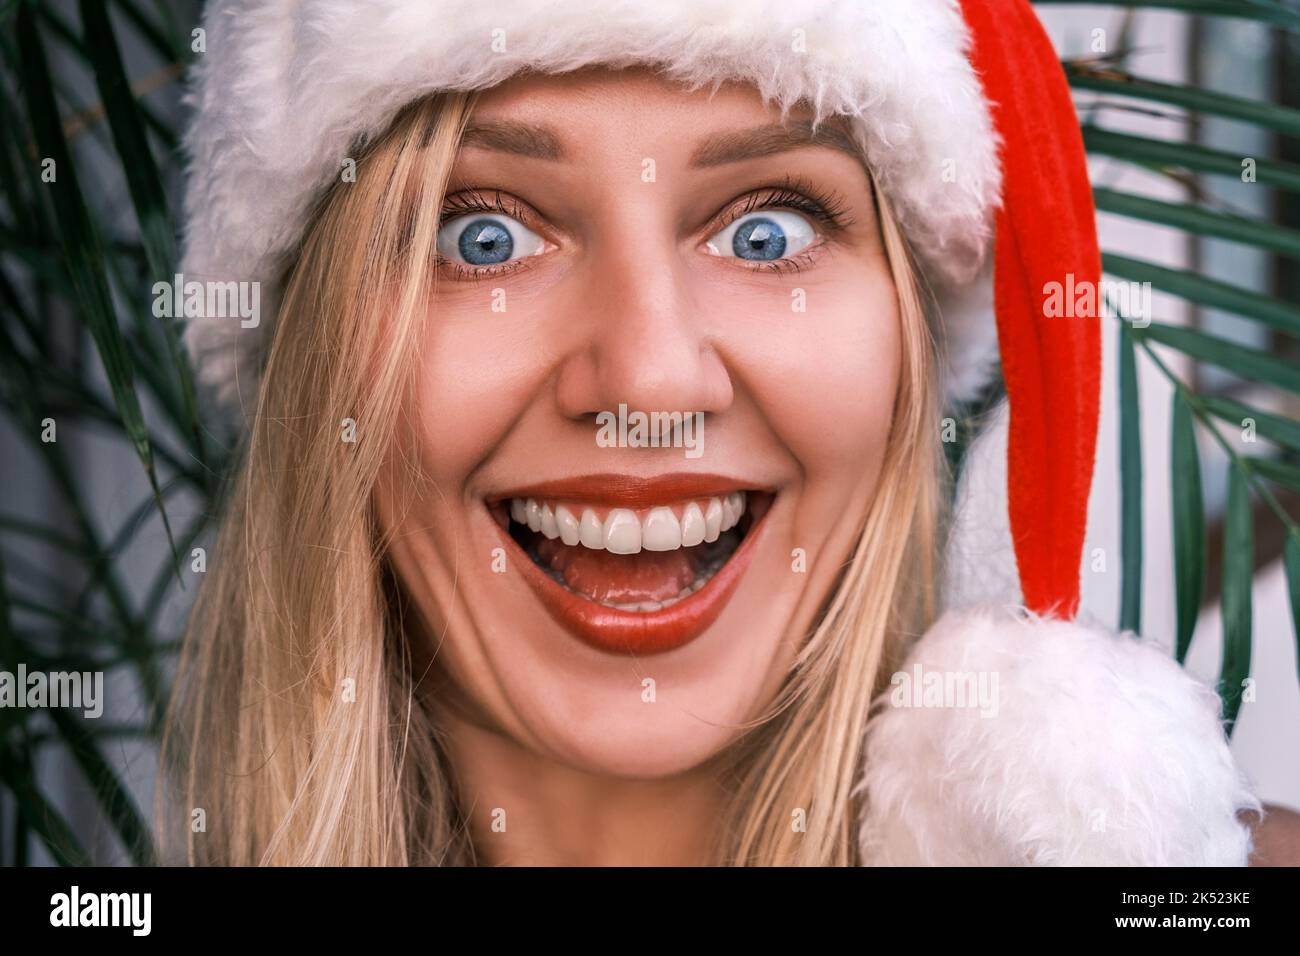 Divertente donna bionda sorridente che indossa il cappello di Santa guardando in macchina fotografica con gli occhi sorpresi. Ragazza che celebra il Natale nei tropici. Atmosfera festiva Foto Stock